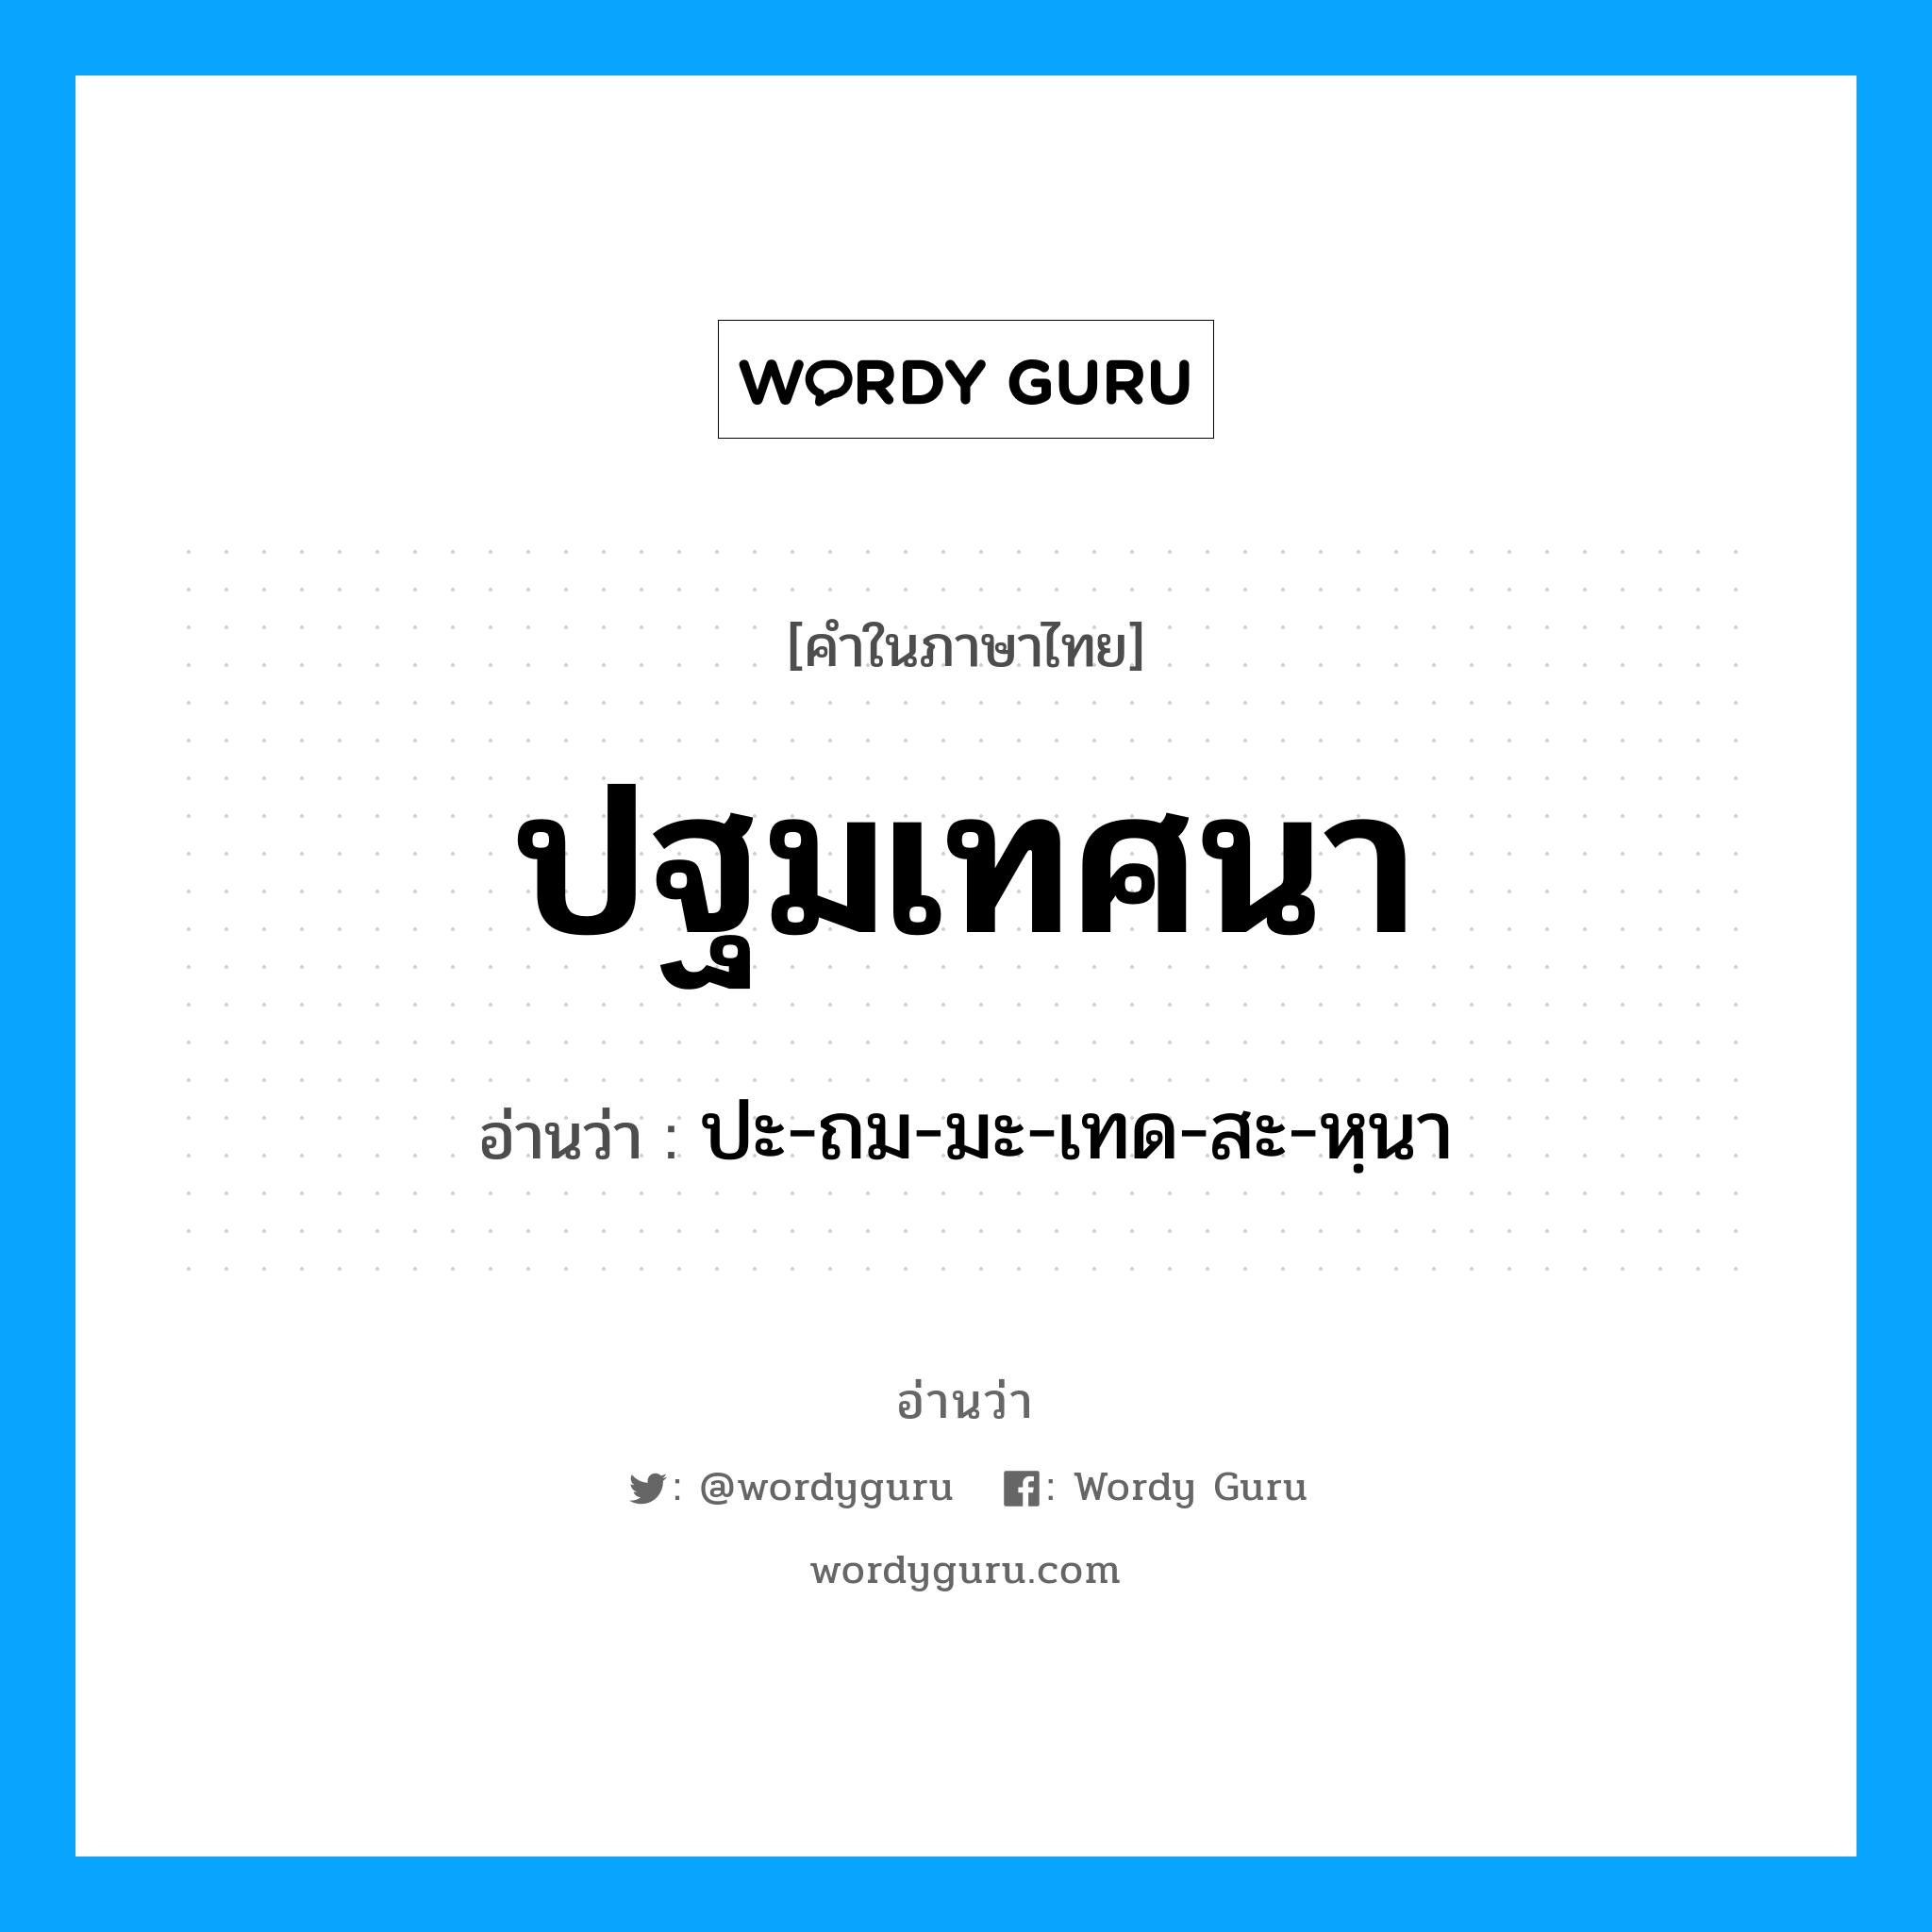 ปะ-ถม-มะ-เทด-สะ-หฺนา เป็นคำอ่านของคำไหน?, คำในภาษาไทย ปะ-ถม-มะ-เทด-สะ-หฺนา อ่านว่า ปฐมเทศนา